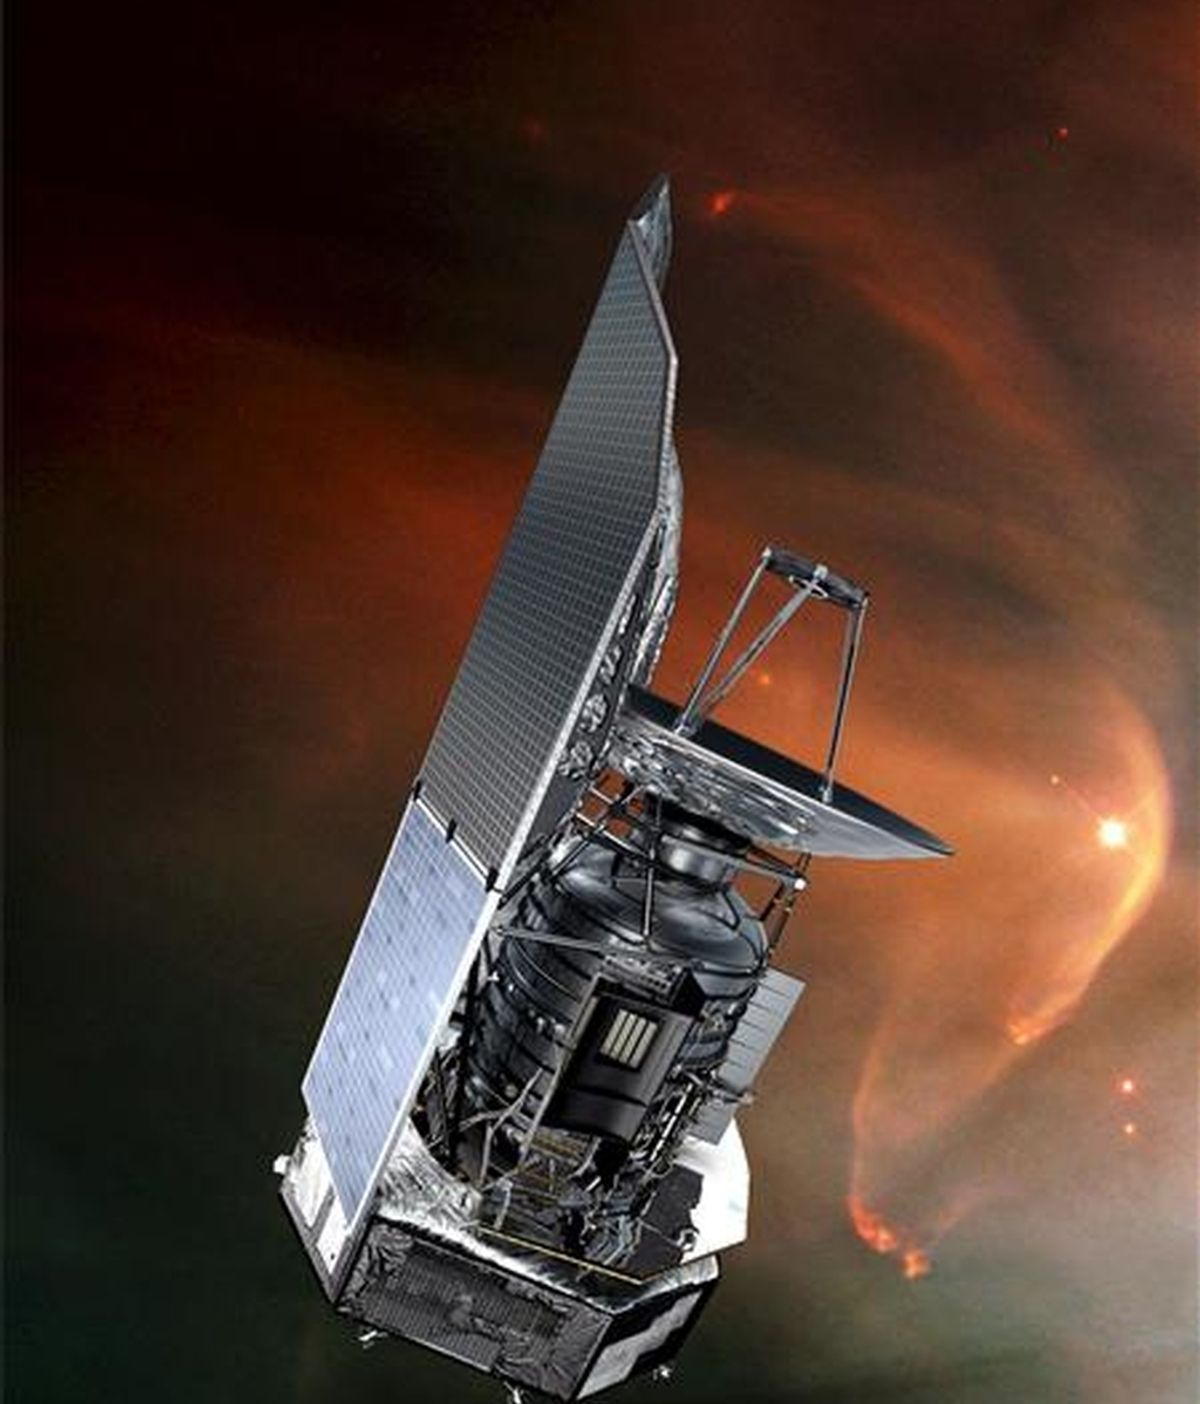 Simulación sin fechar de la Agencia Espacial Europea (ESA) que muestra el satélite espacial Herschel. EFE/ESA /AOES Medialab